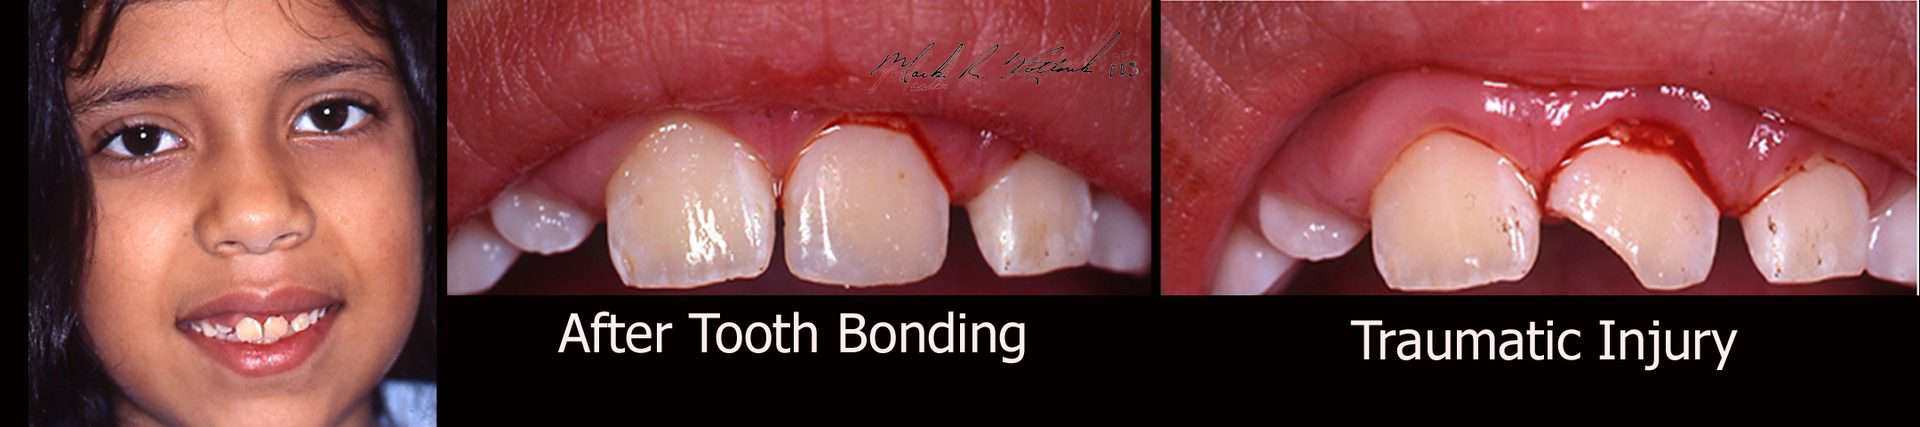 tooth broken bonding